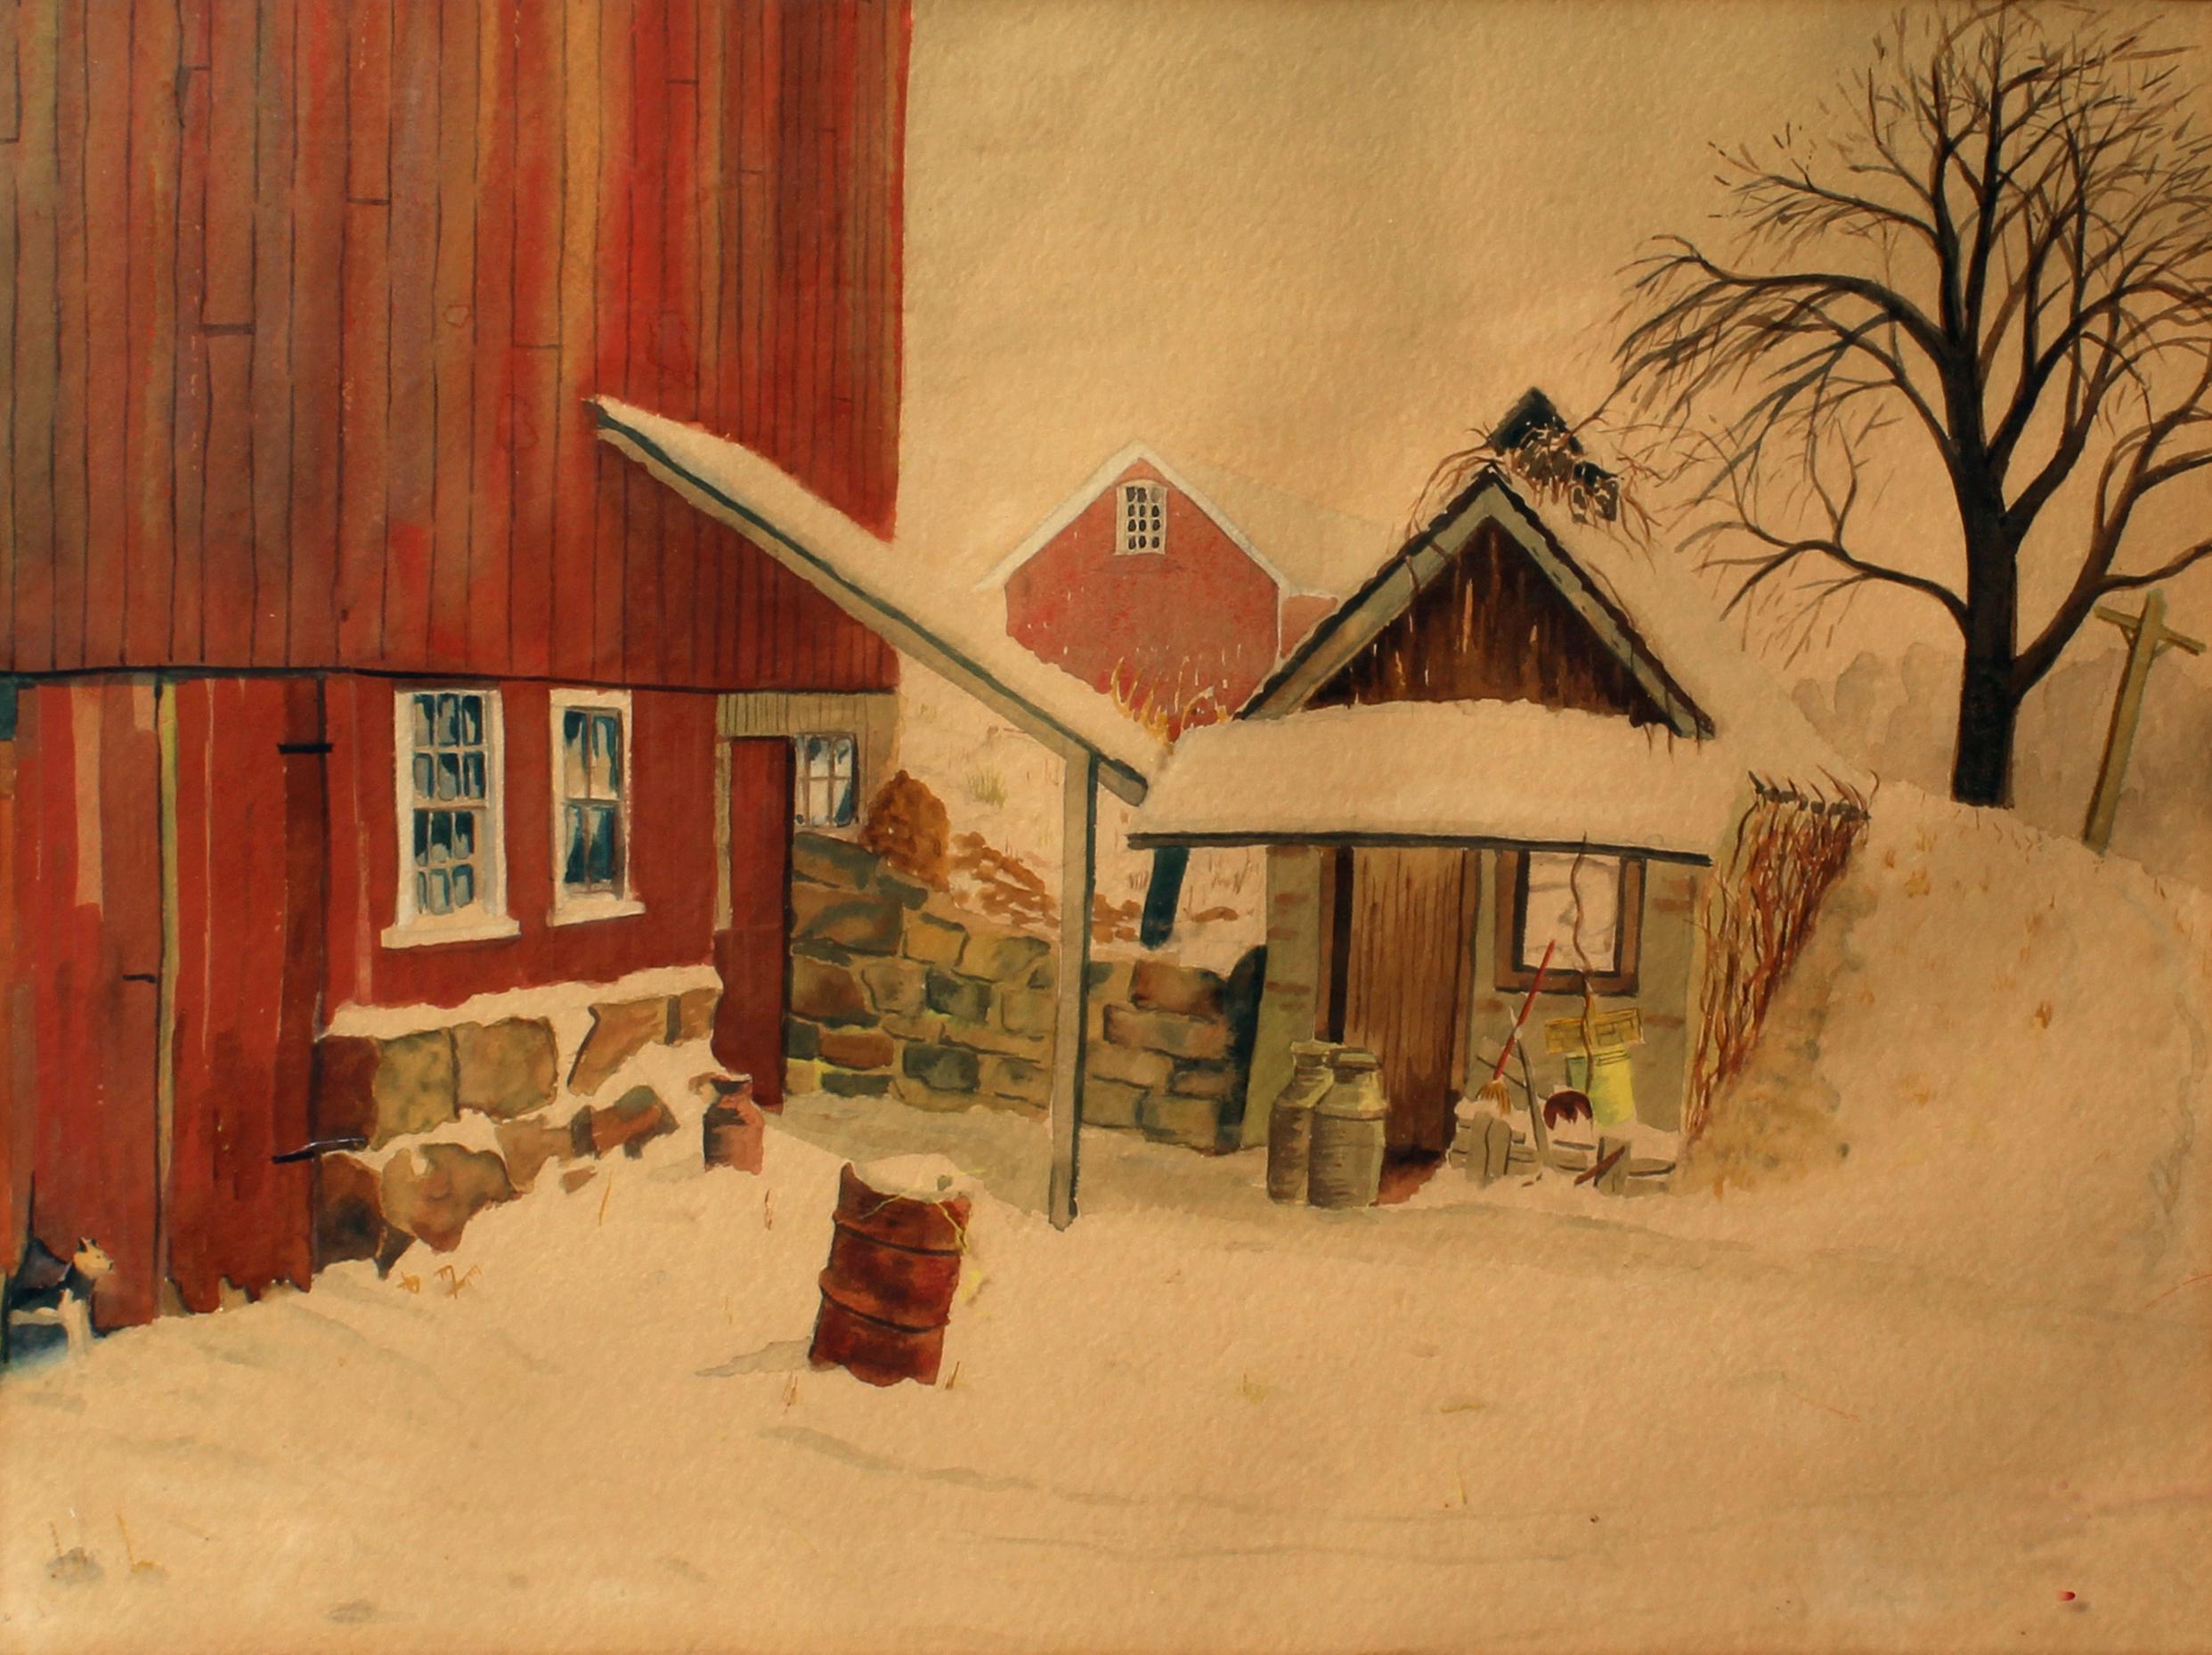 Butler Art Institute - Aquarelle d'une scène de grange avec chien d'hiver, c. 1940  - Beige Landscape Art par Joseph Koch